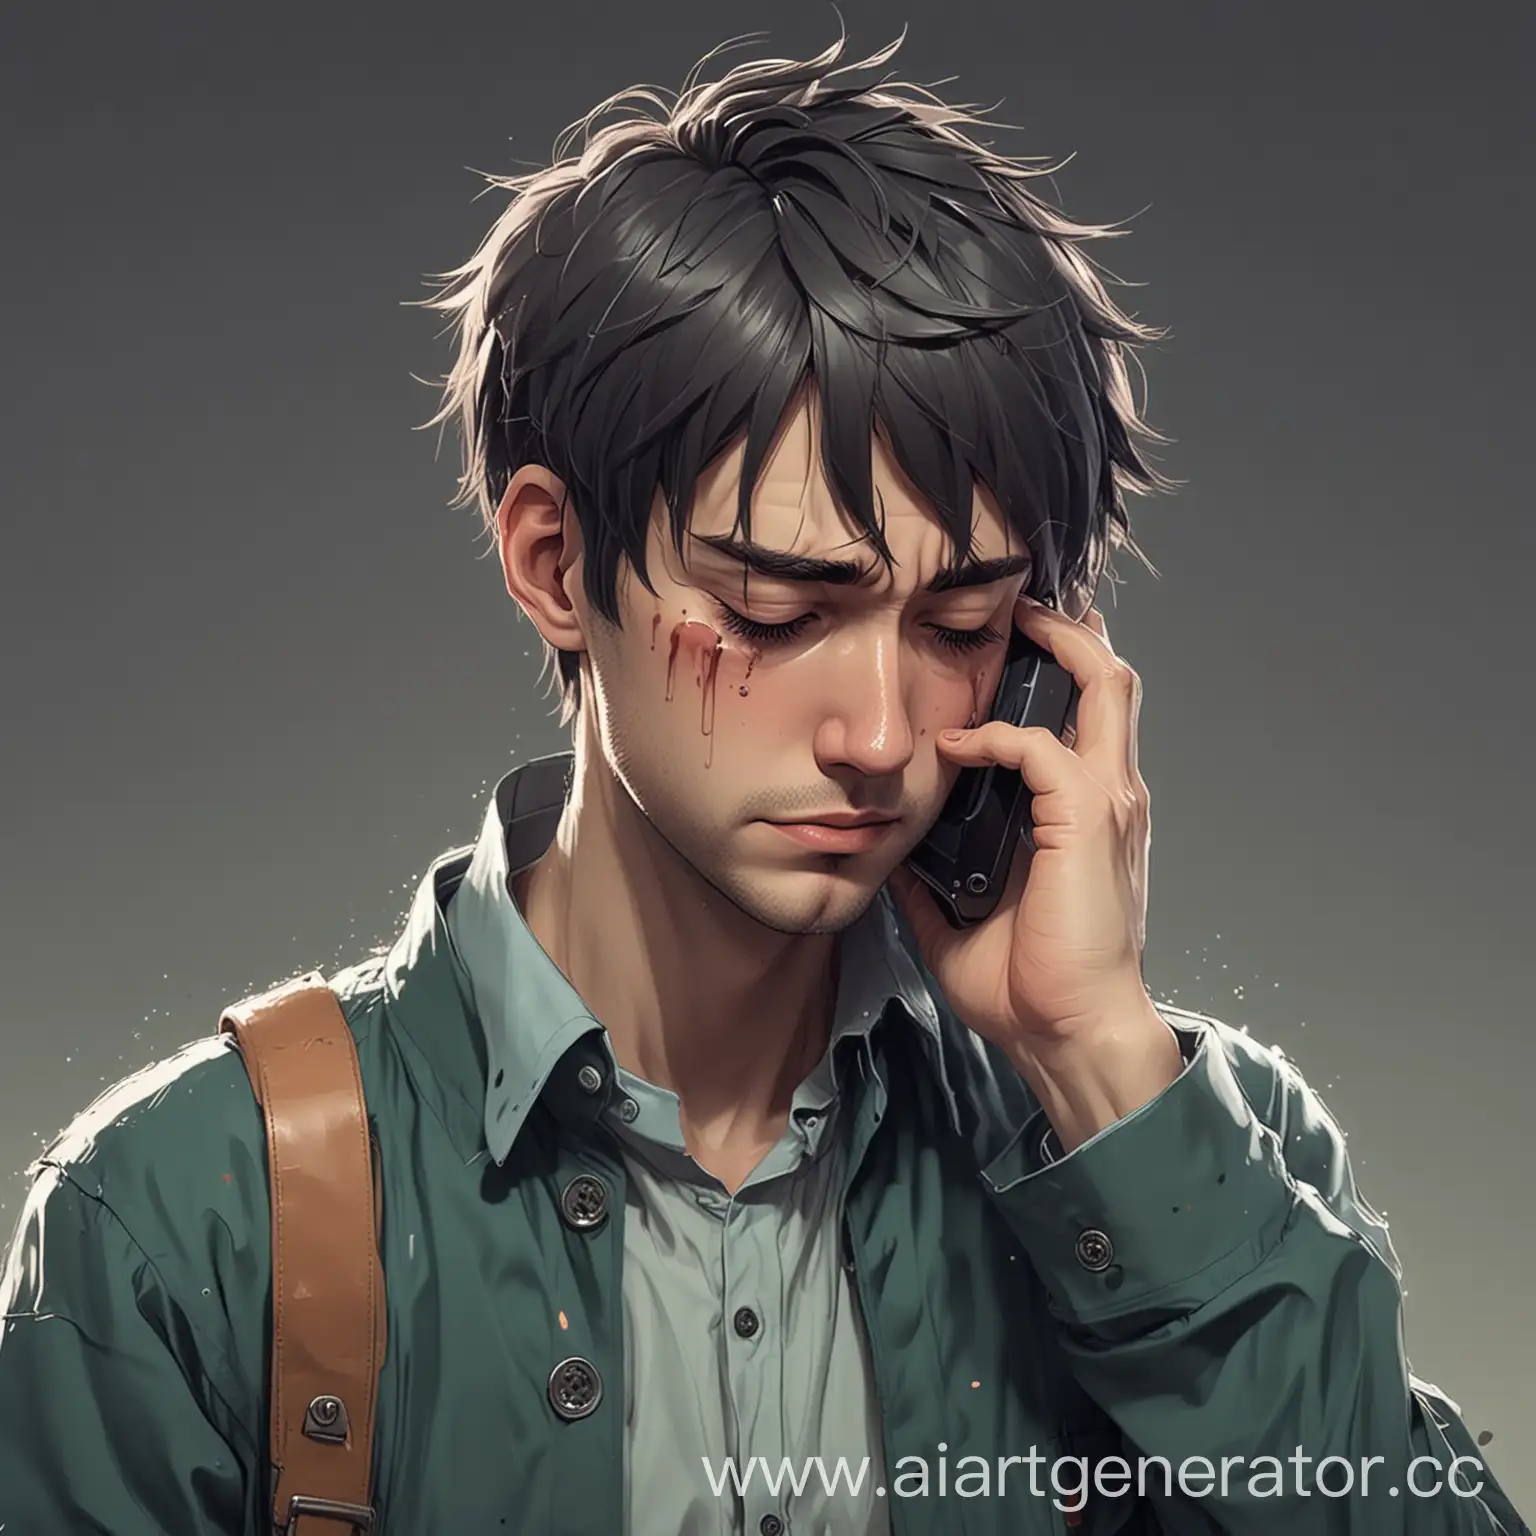 человек в аниме стиле держит телефон и плачет от грусти что его бросили, всё в мрачных цветах